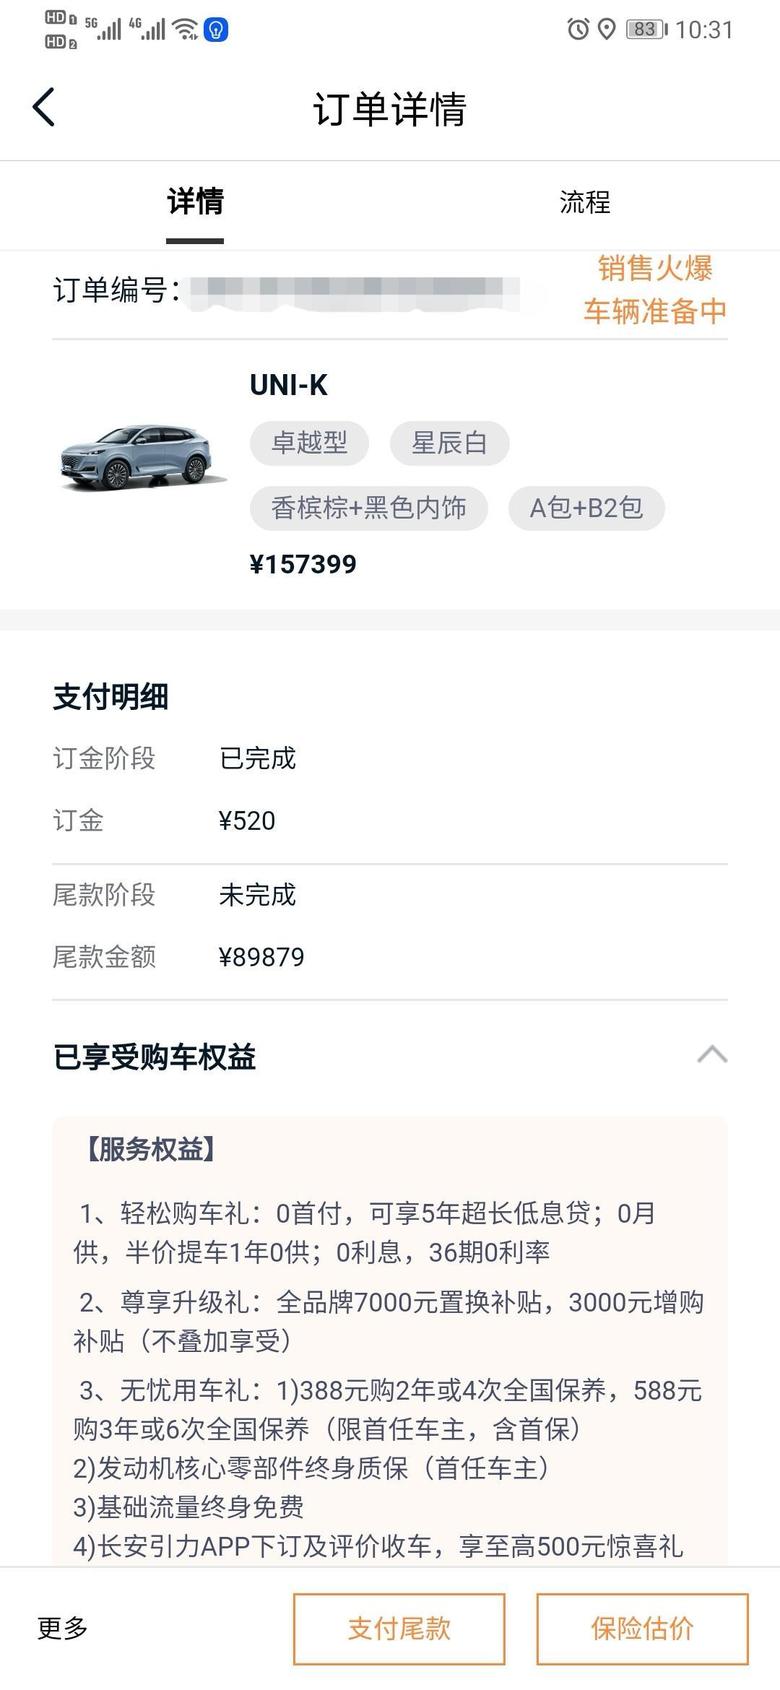 长安uni k-坐标深圳，已订UNIK两驱卓越，半个月过去了一点消息都还没有，你们线上订车等了多久？